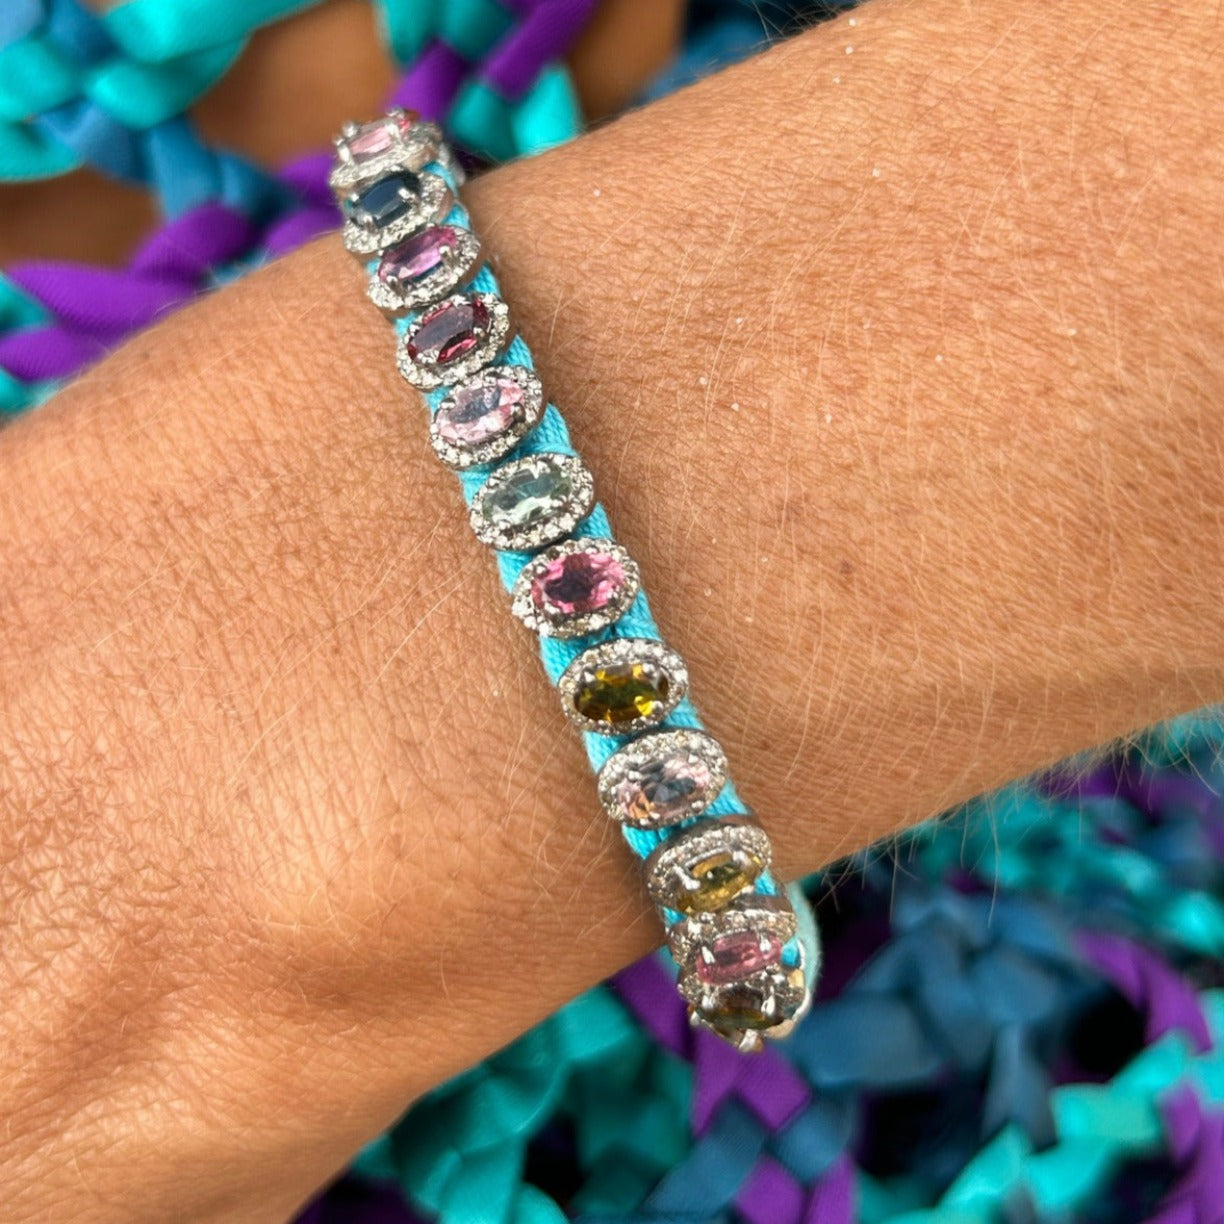 Rio Turquoise bracelet semi-precious stones in 925 silver and diamonds